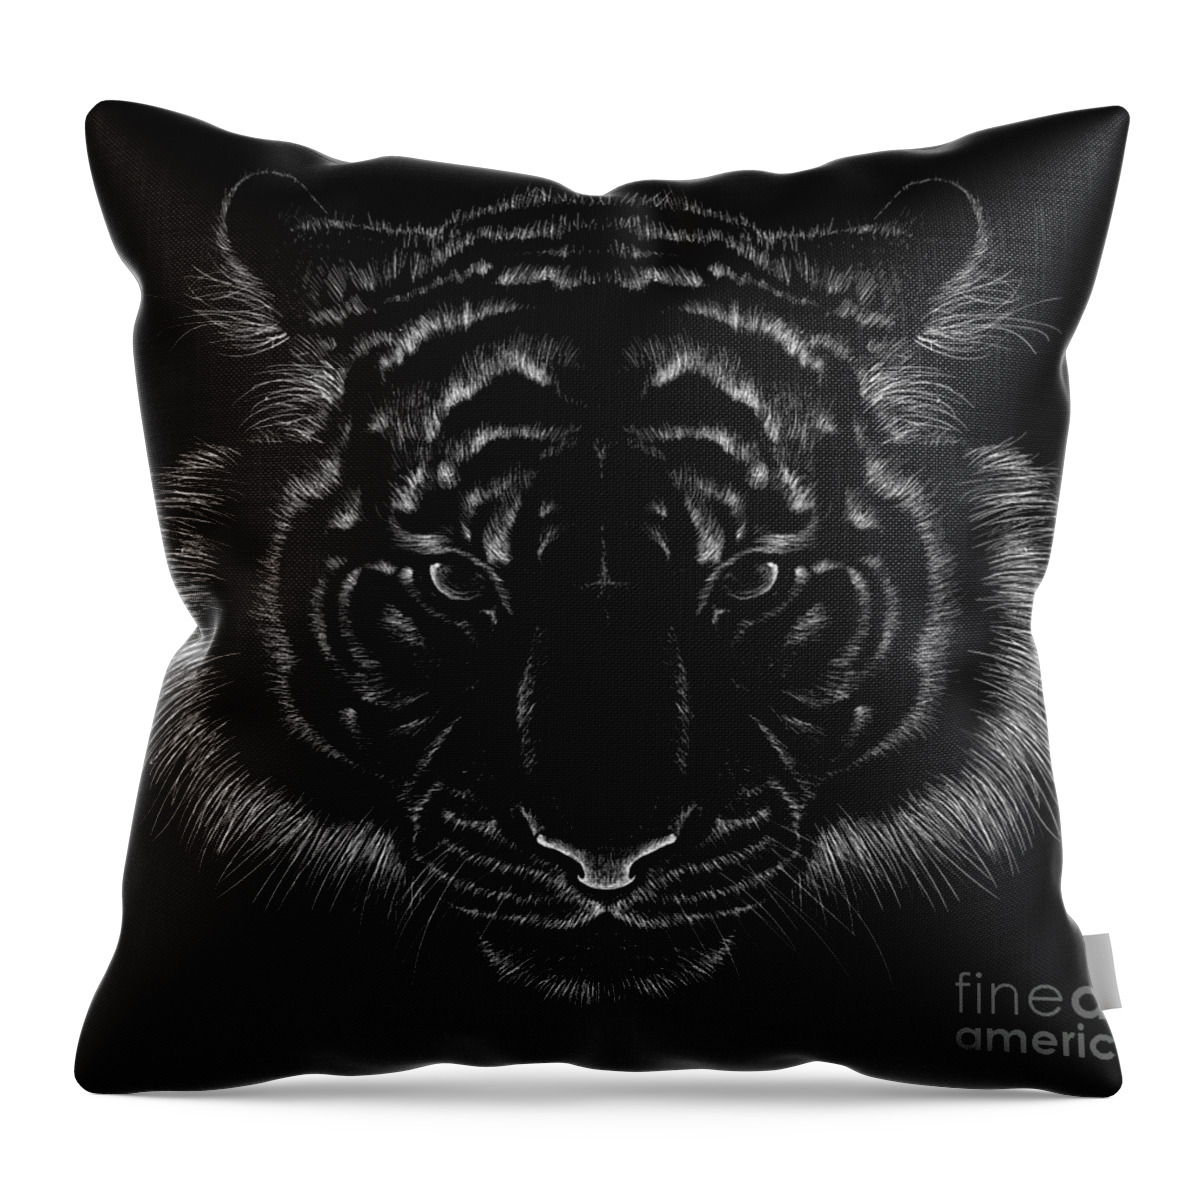 Tiger Throw Pillow, Animal Pillow, Art Pillow, Black White Pillow